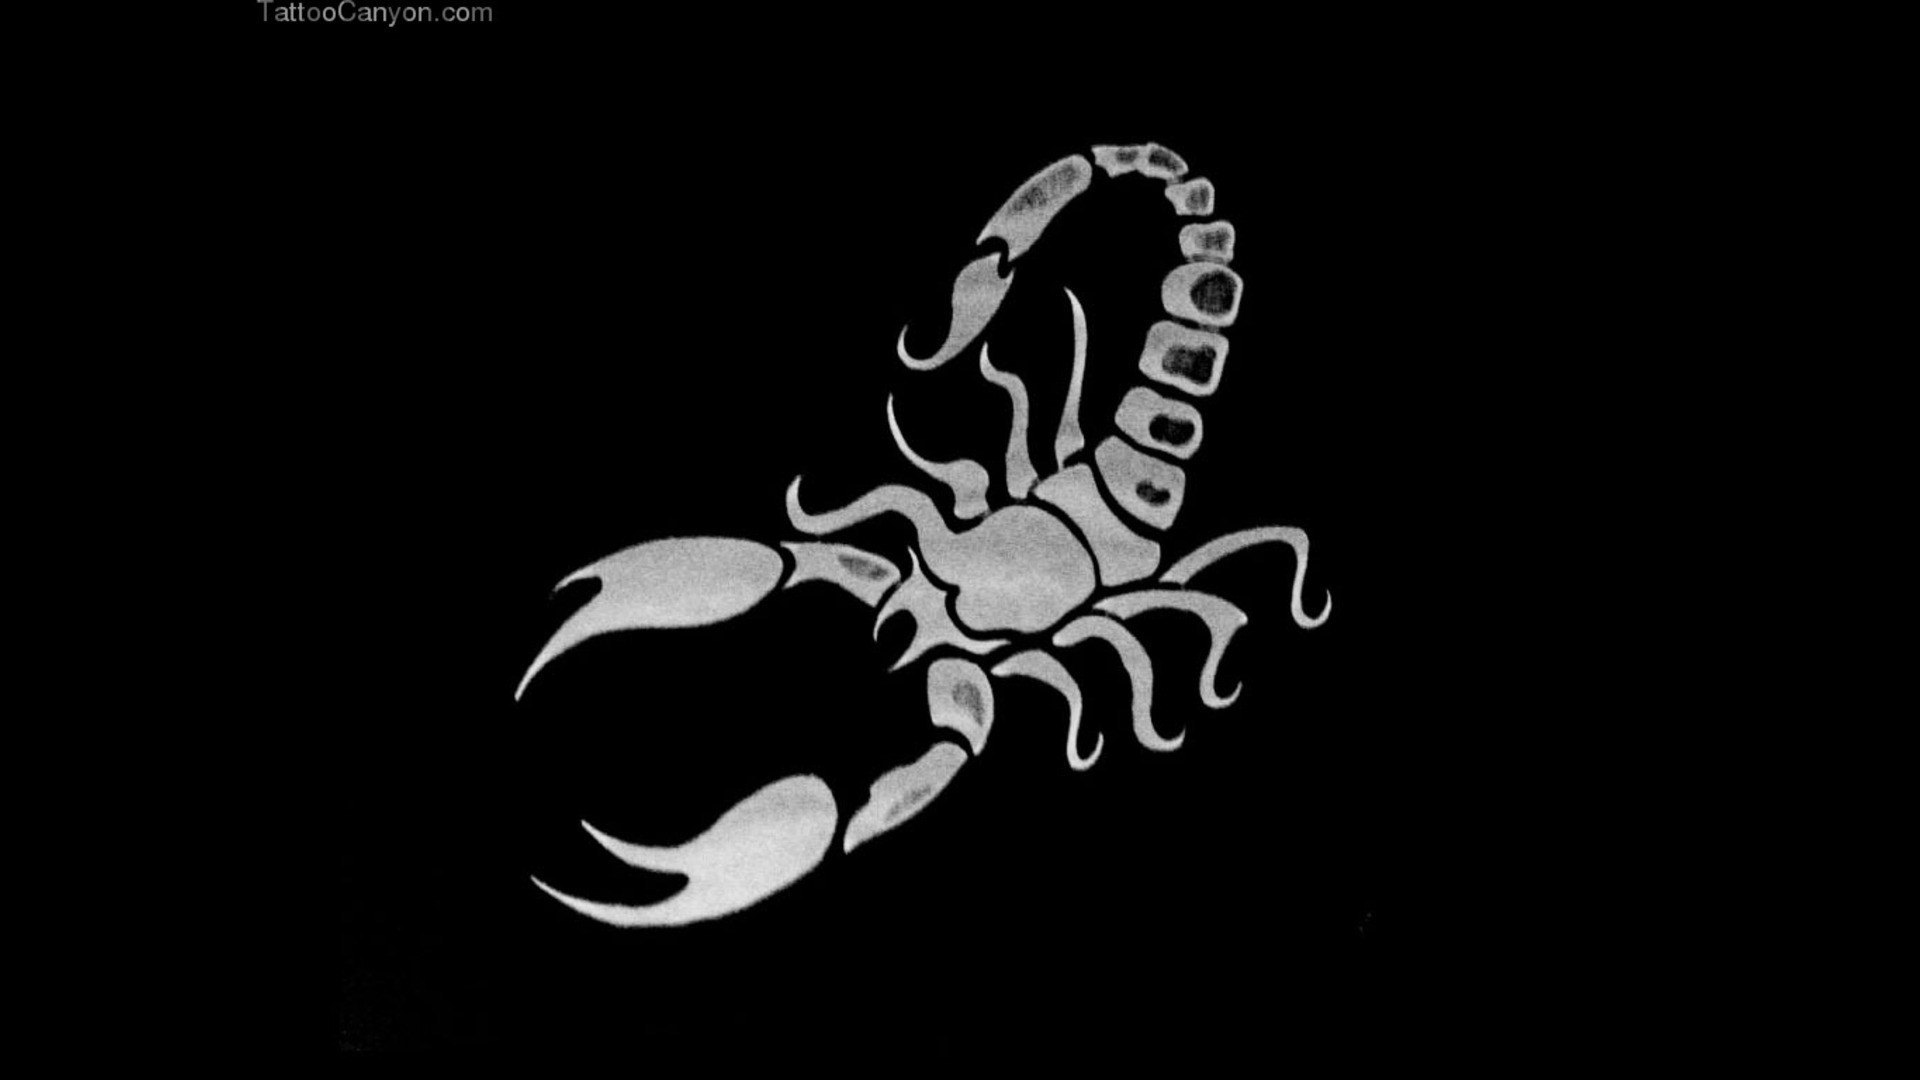 Scorpion tatuaje Designs Fondos de pantalla Imágenes por Shep39  Imágenes  españoles imágenes